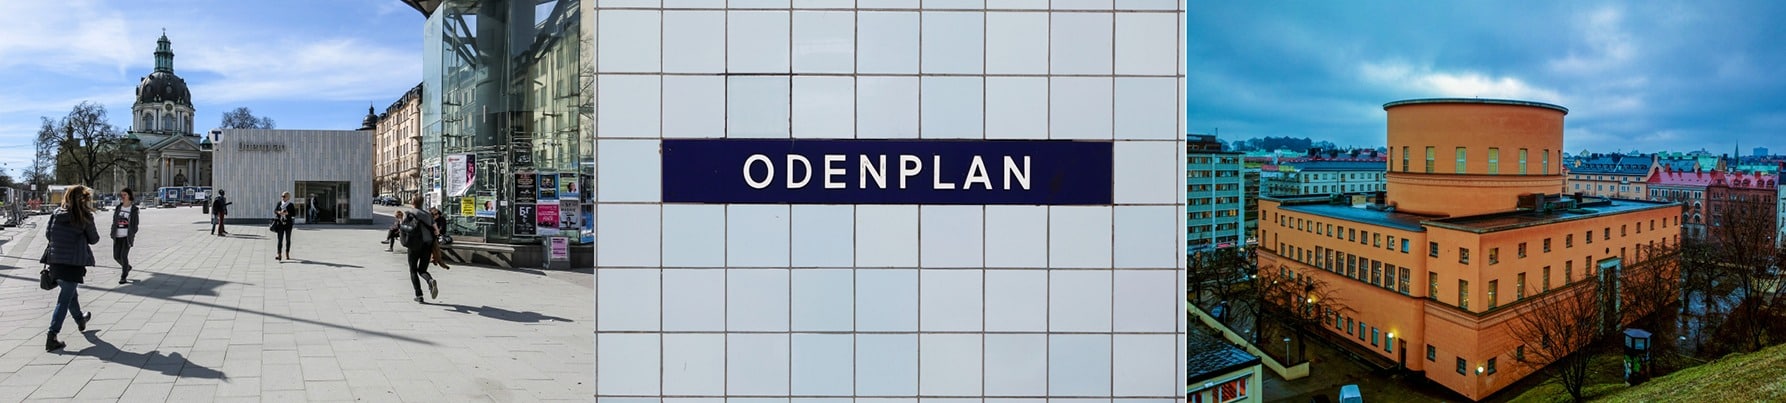 Tandvård Odenplan